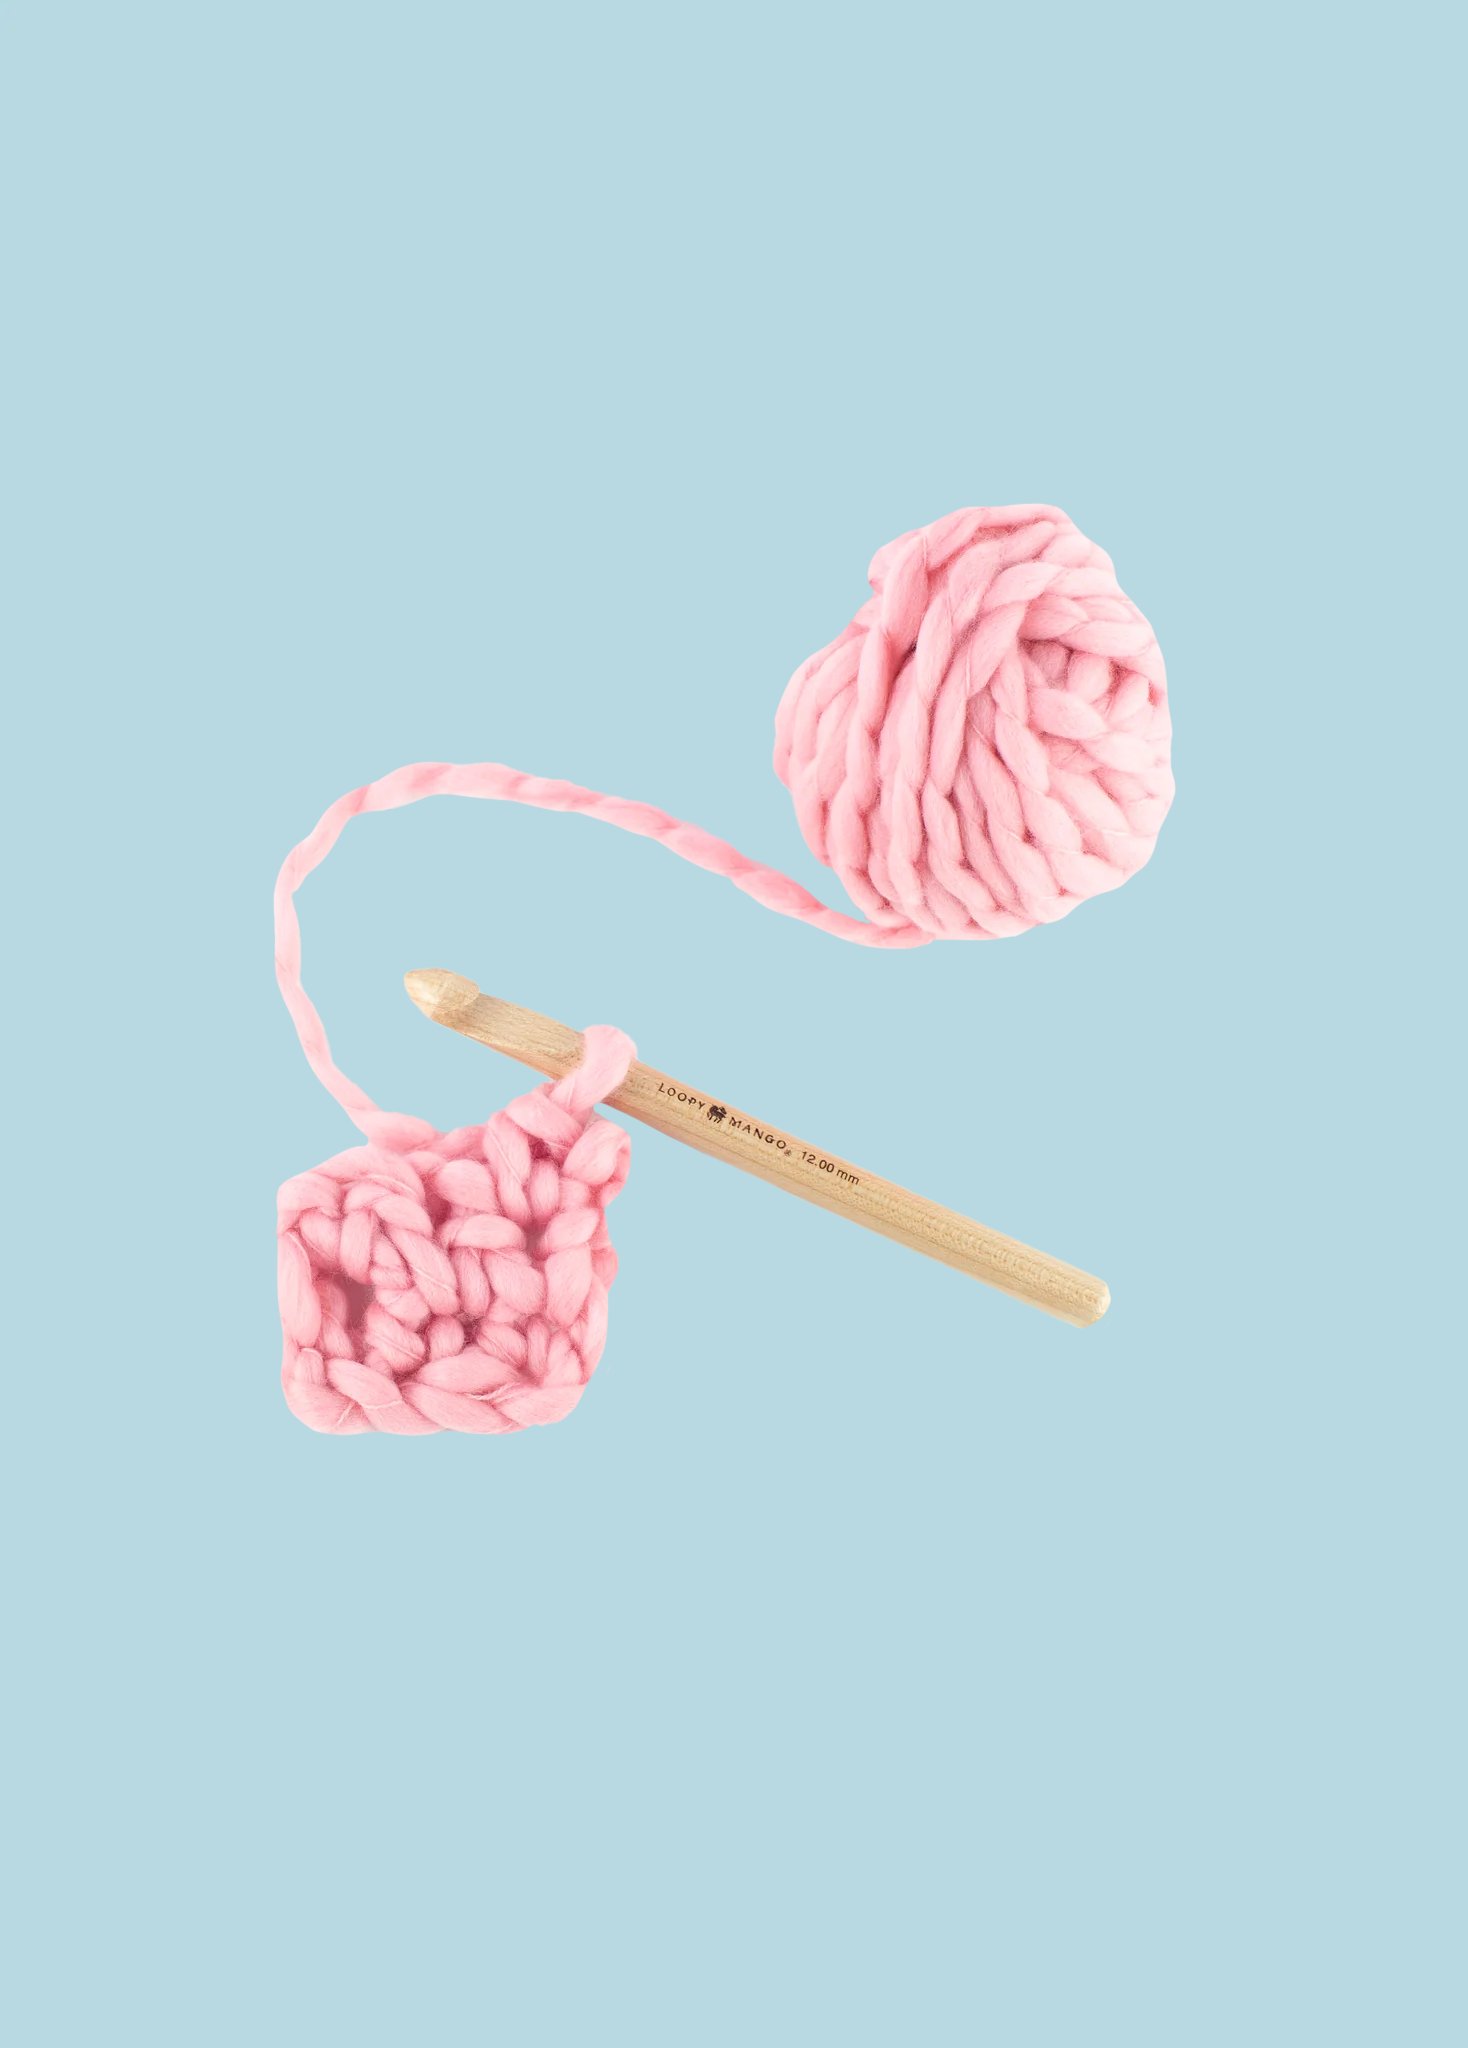 Giant crochet hook, size U crochet hook 25 mm crochet hook – Loopy Mango